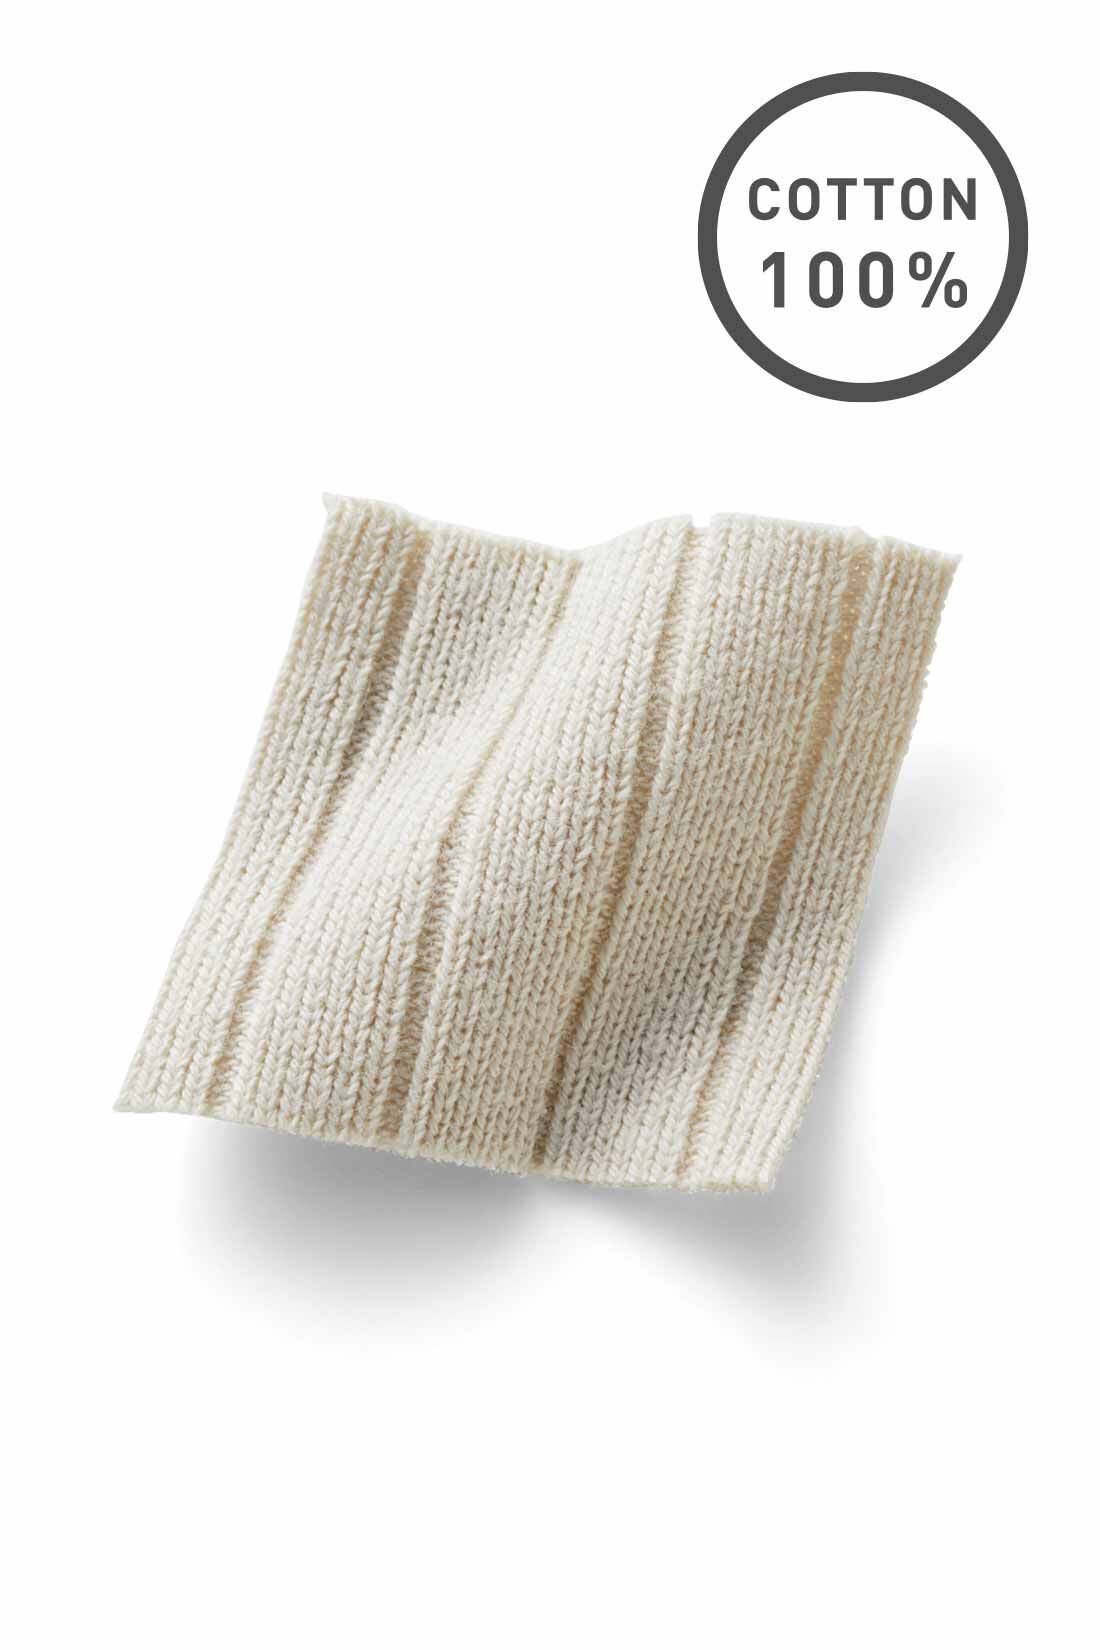 Live in  comfort|リブ イン コンフォート　らくちんきれい見えコットンリブパンツ〈ライトベージュ〉|しっかりとした綿100％のリブ素材。